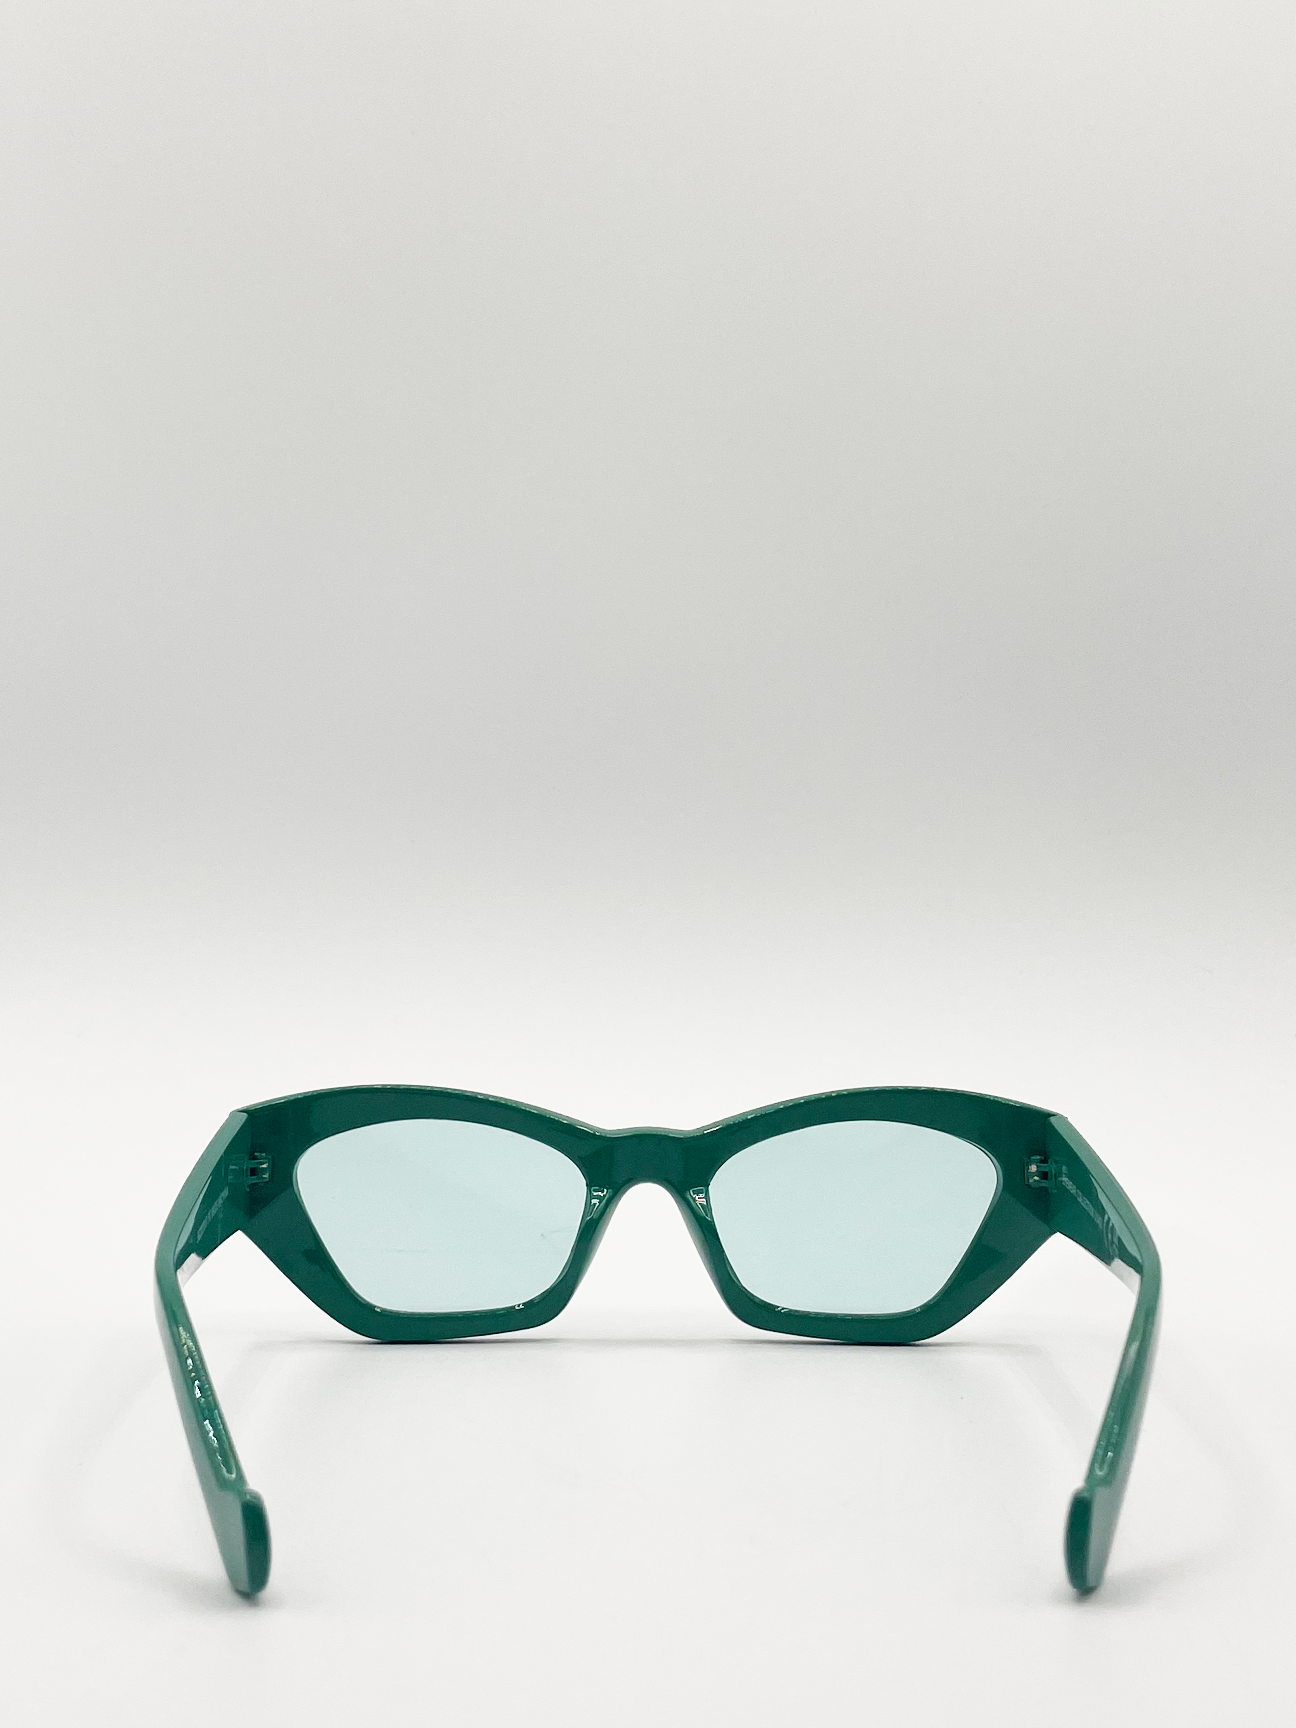 Green Angular Cat Eye Ssugnlasses with Green Lenses